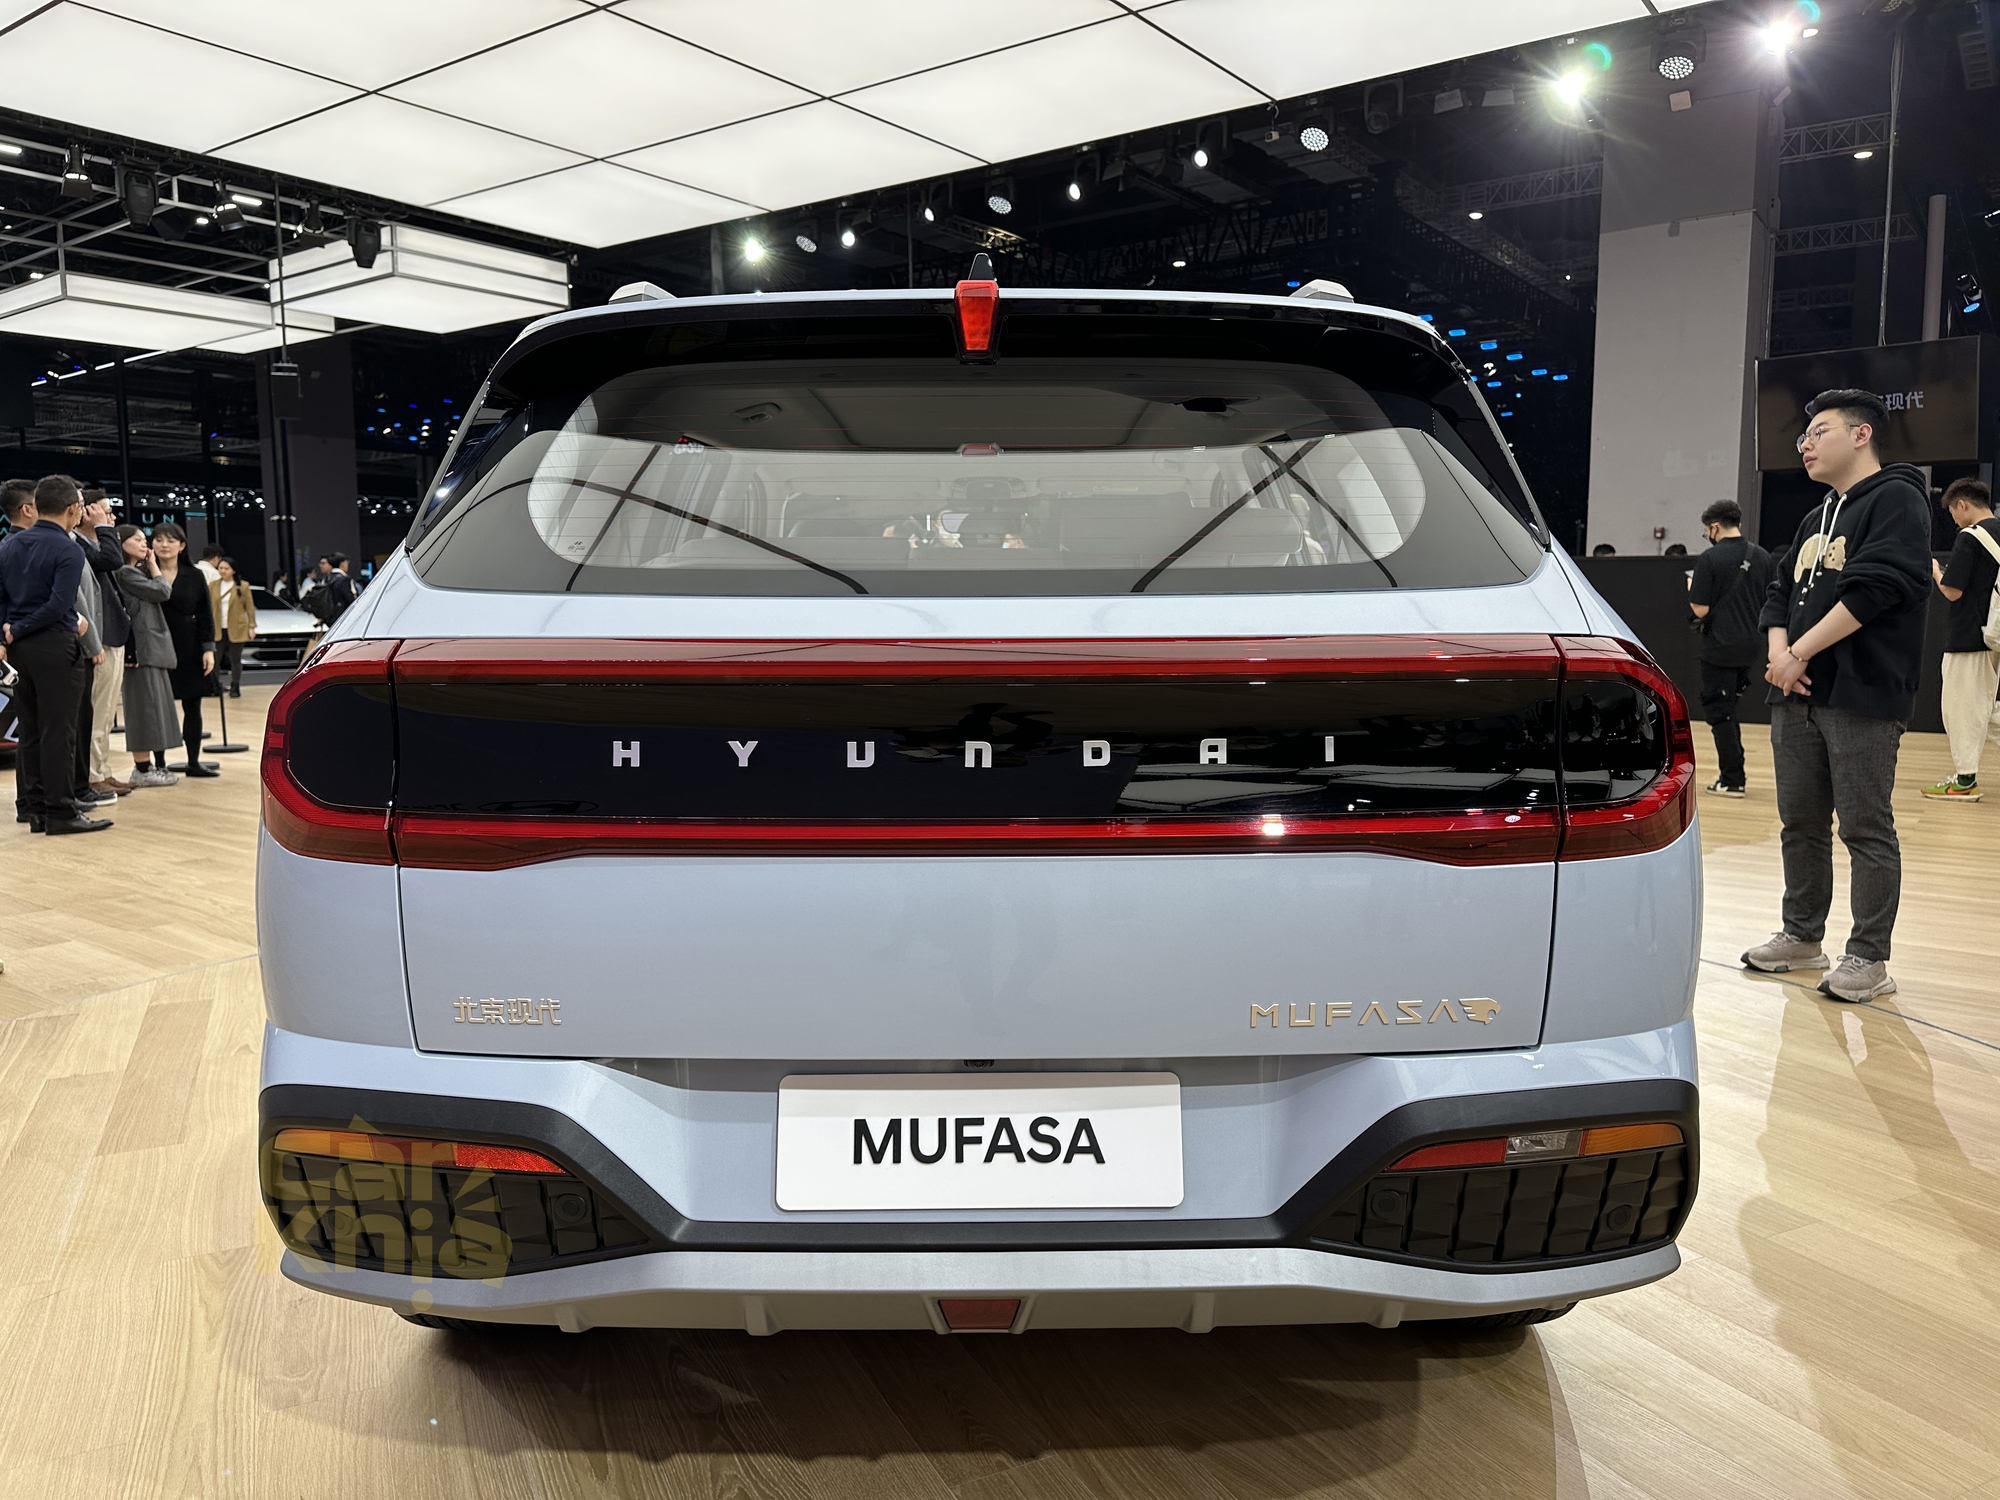 Hyundai Mufasa chính thức ra mắt: Nội thất khác xa ảnh rò rỉ, học hỏi nhiều từ Tucson và Elantra - Ảnh 6.